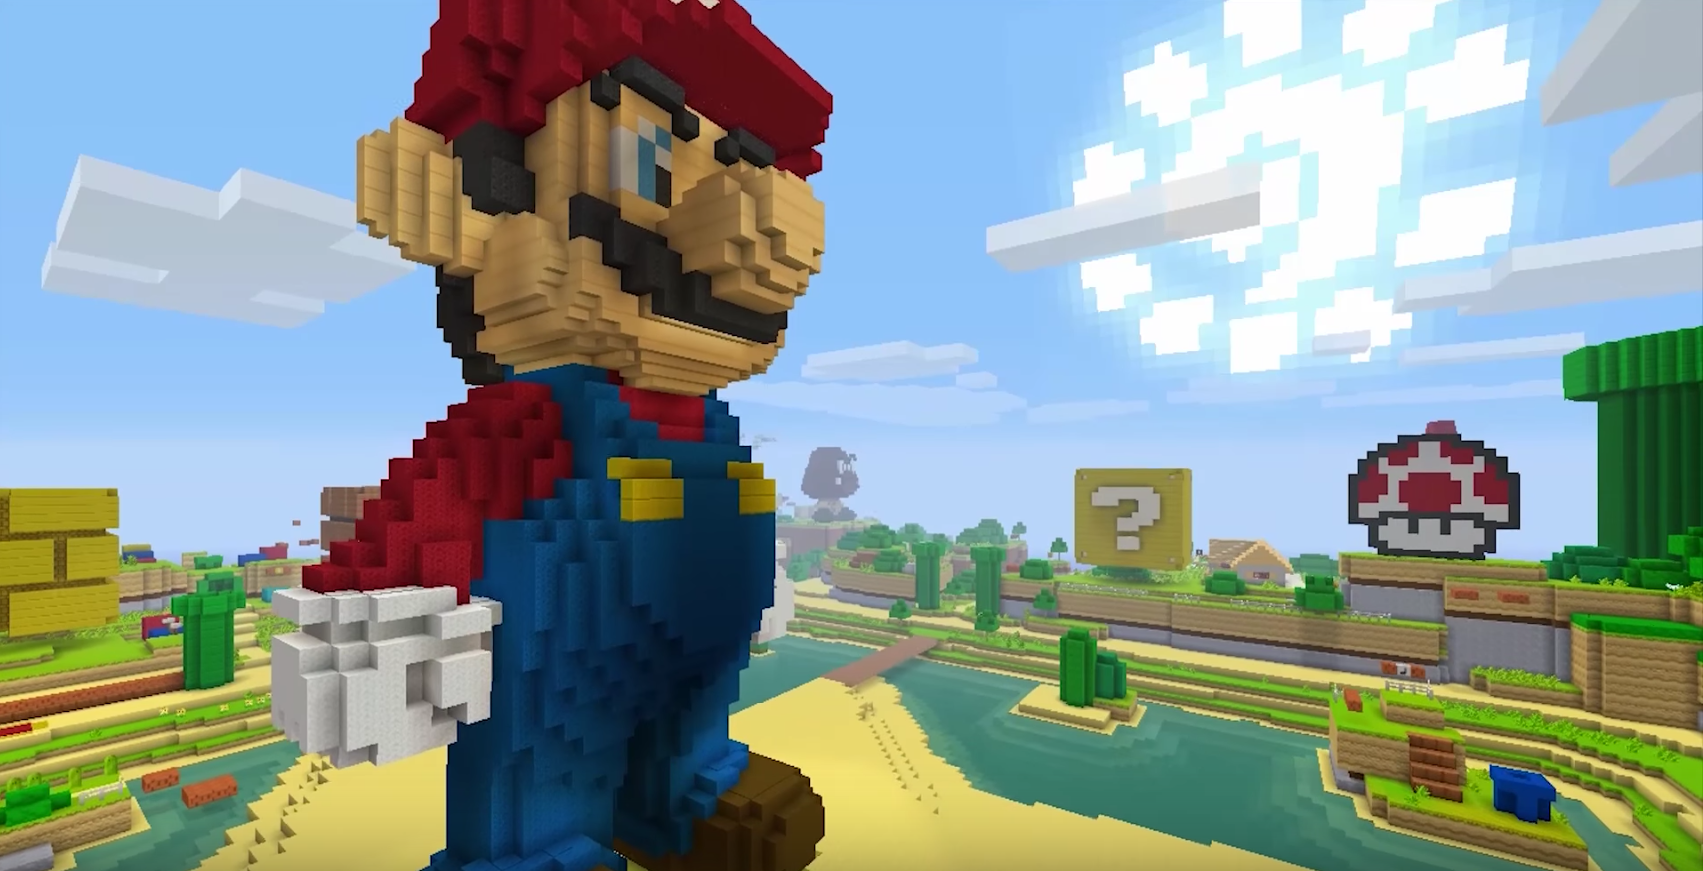 Minecraft Wii U gets rad Super Mario Mash-Up Pack for free